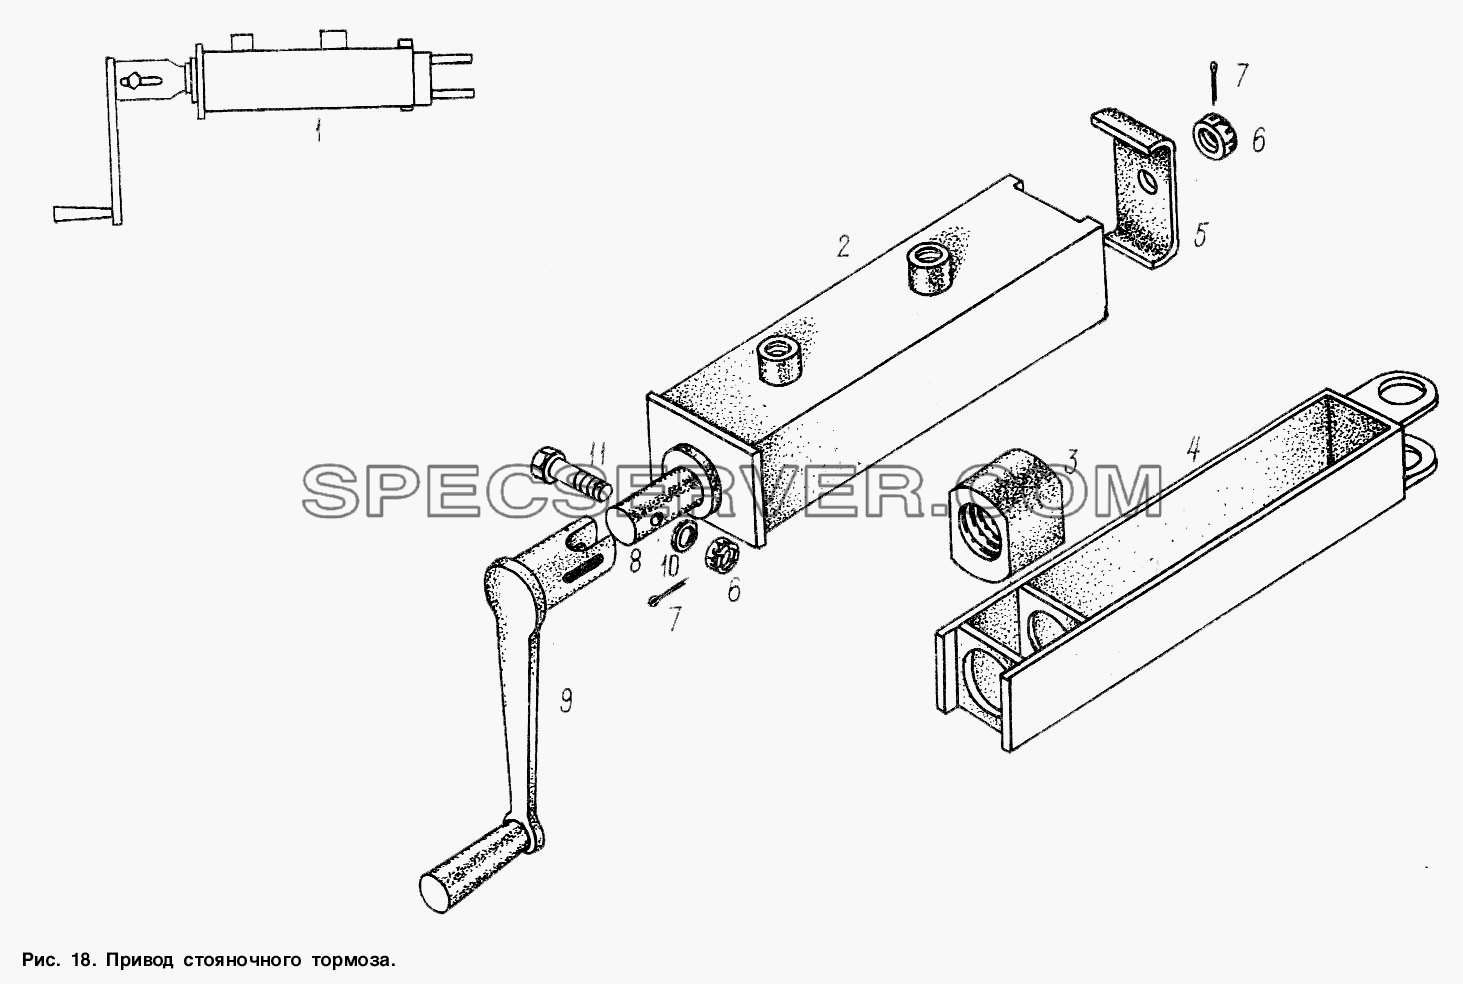 Привод стояночного тормоза для МАЗ-9506 (список запасных частей)